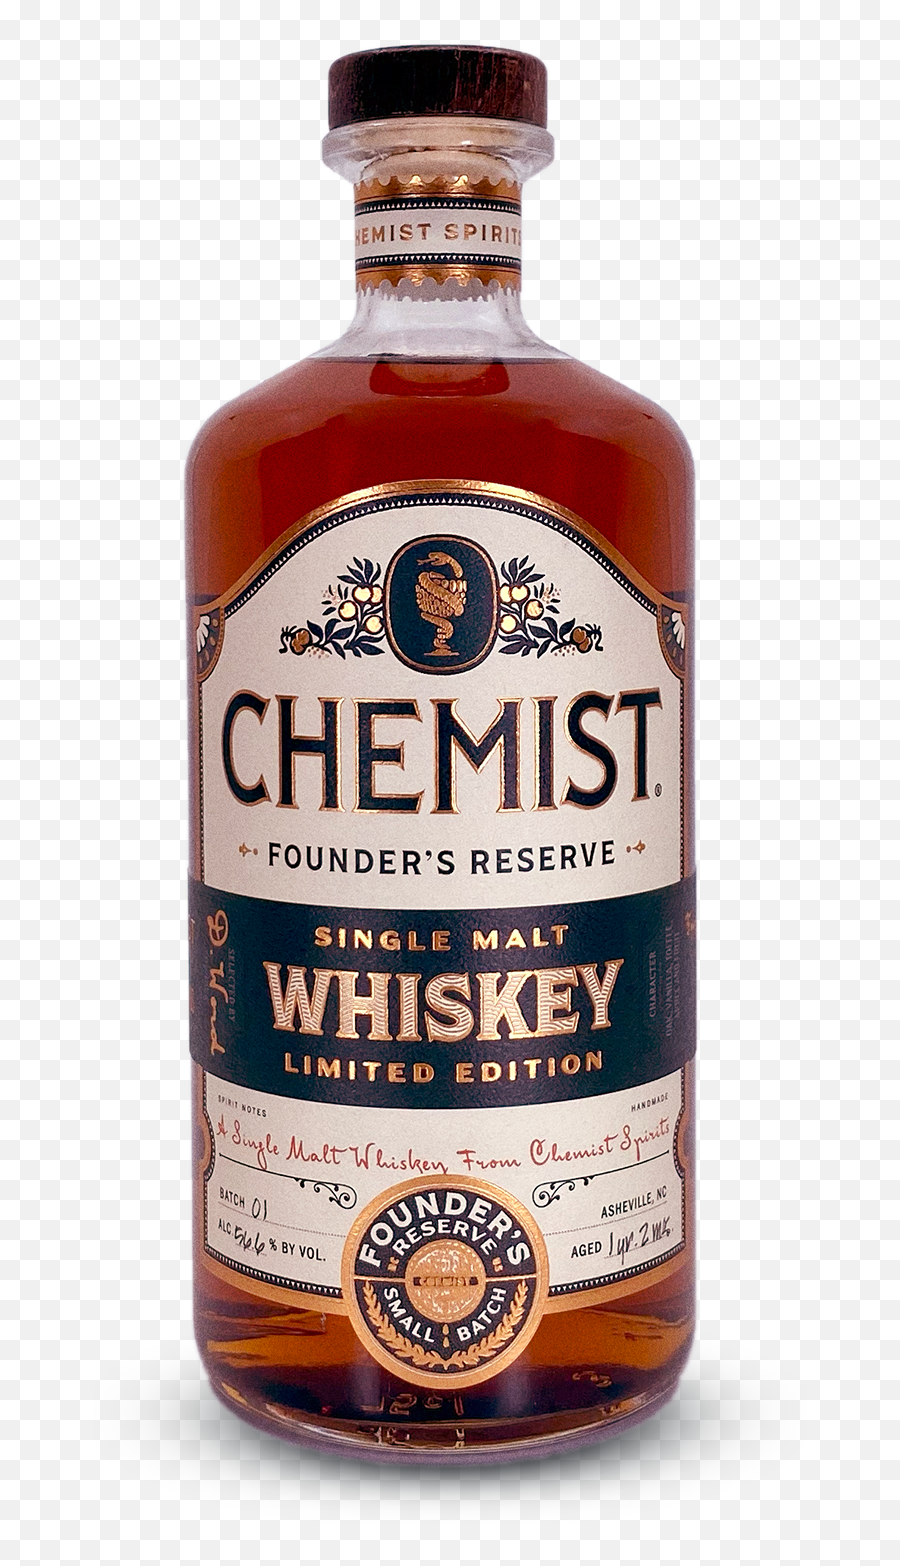 Founderu0027s Reserve Whiskey U2014 Chemist Spirits Emoji,Shots Png